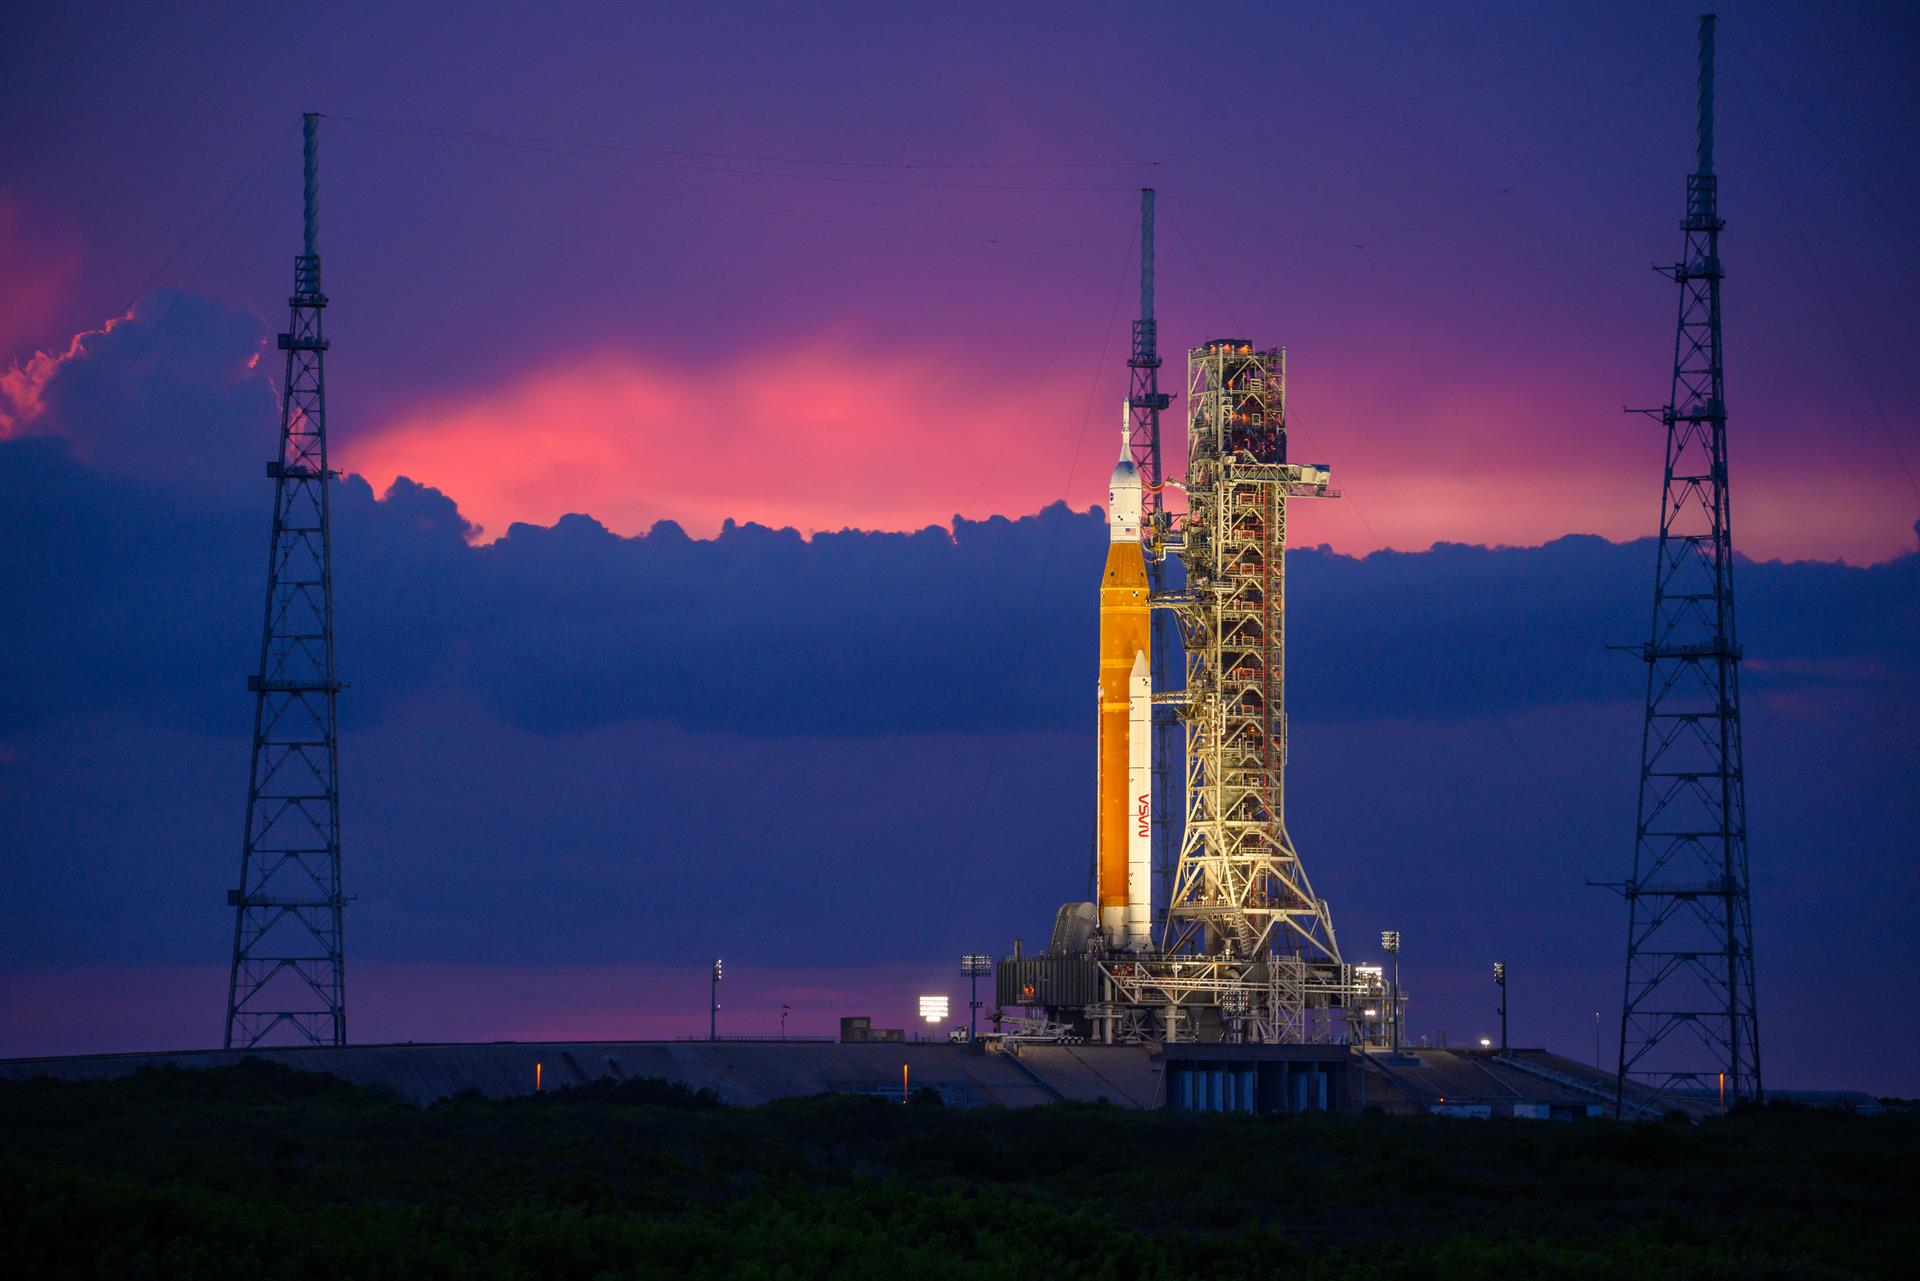 Fotografía del 30 de agosto cedida por la NASA donde se muestra el cohete del Sistema de Lanzamiento Espacial (SLS) con la nave espacial Orion a bordo mientras está encima del lanzador móvil en la plataforma de Lanzamiento 39B en el Centro Espacial Kennedy en Merritt Island, Florida (EEUU). EFE/ Eric Bordelon Nasa SOLO USO EDITORIAL SOLO DISPONIBLE PARA ILUSTRAR LA NOTICIA QUE ACOMPAÑA (CRÉDITO OBLIGATORIO)
